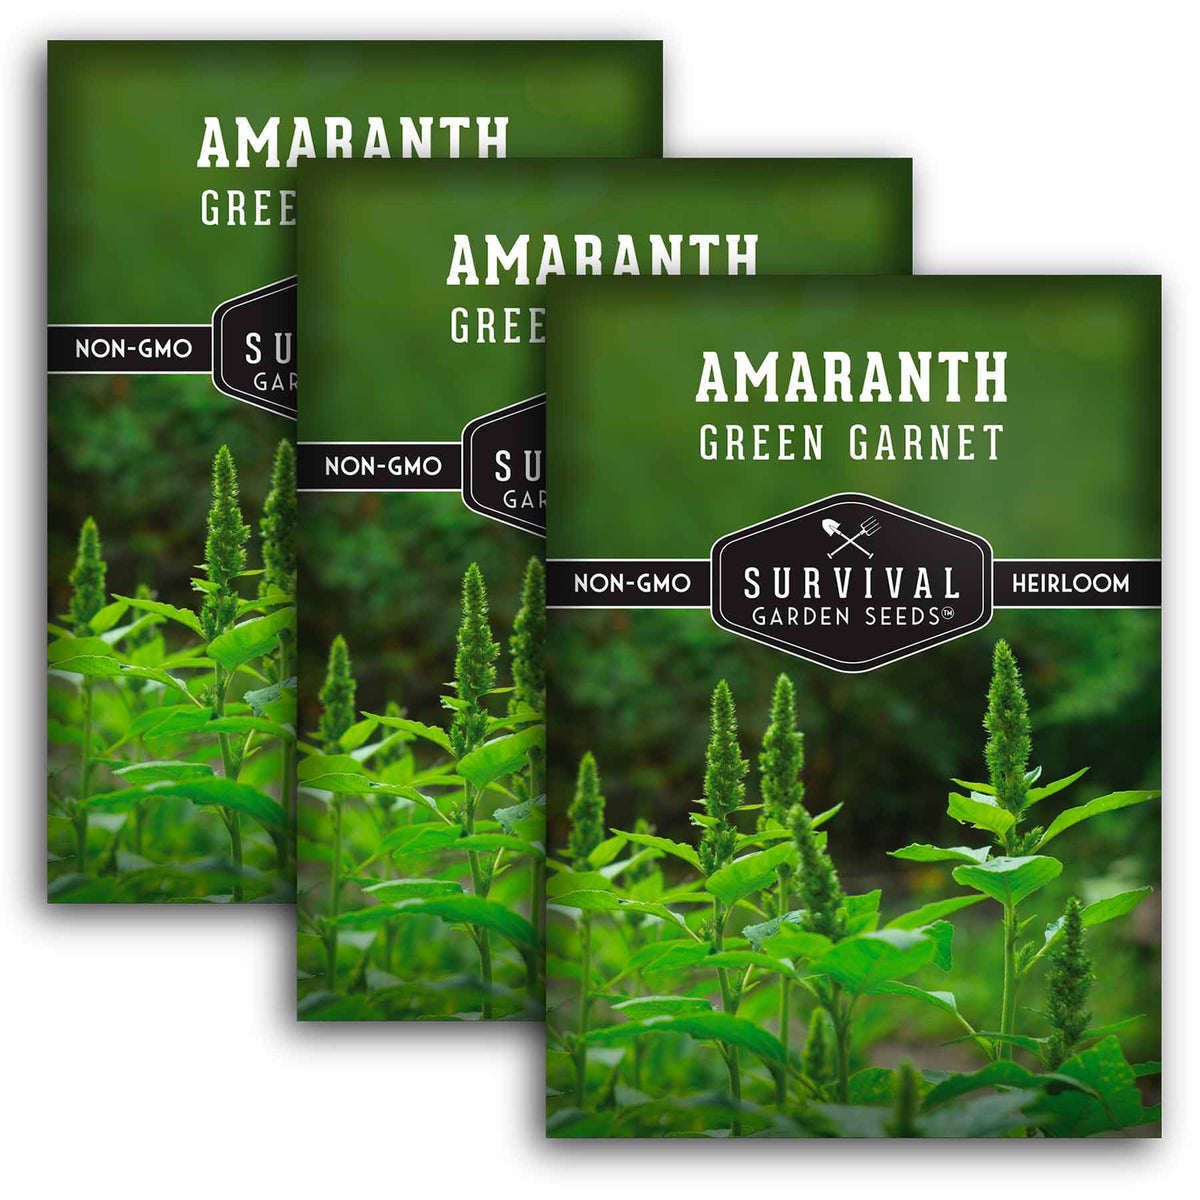 3 Packets of Green Garnet Amaranth seeds